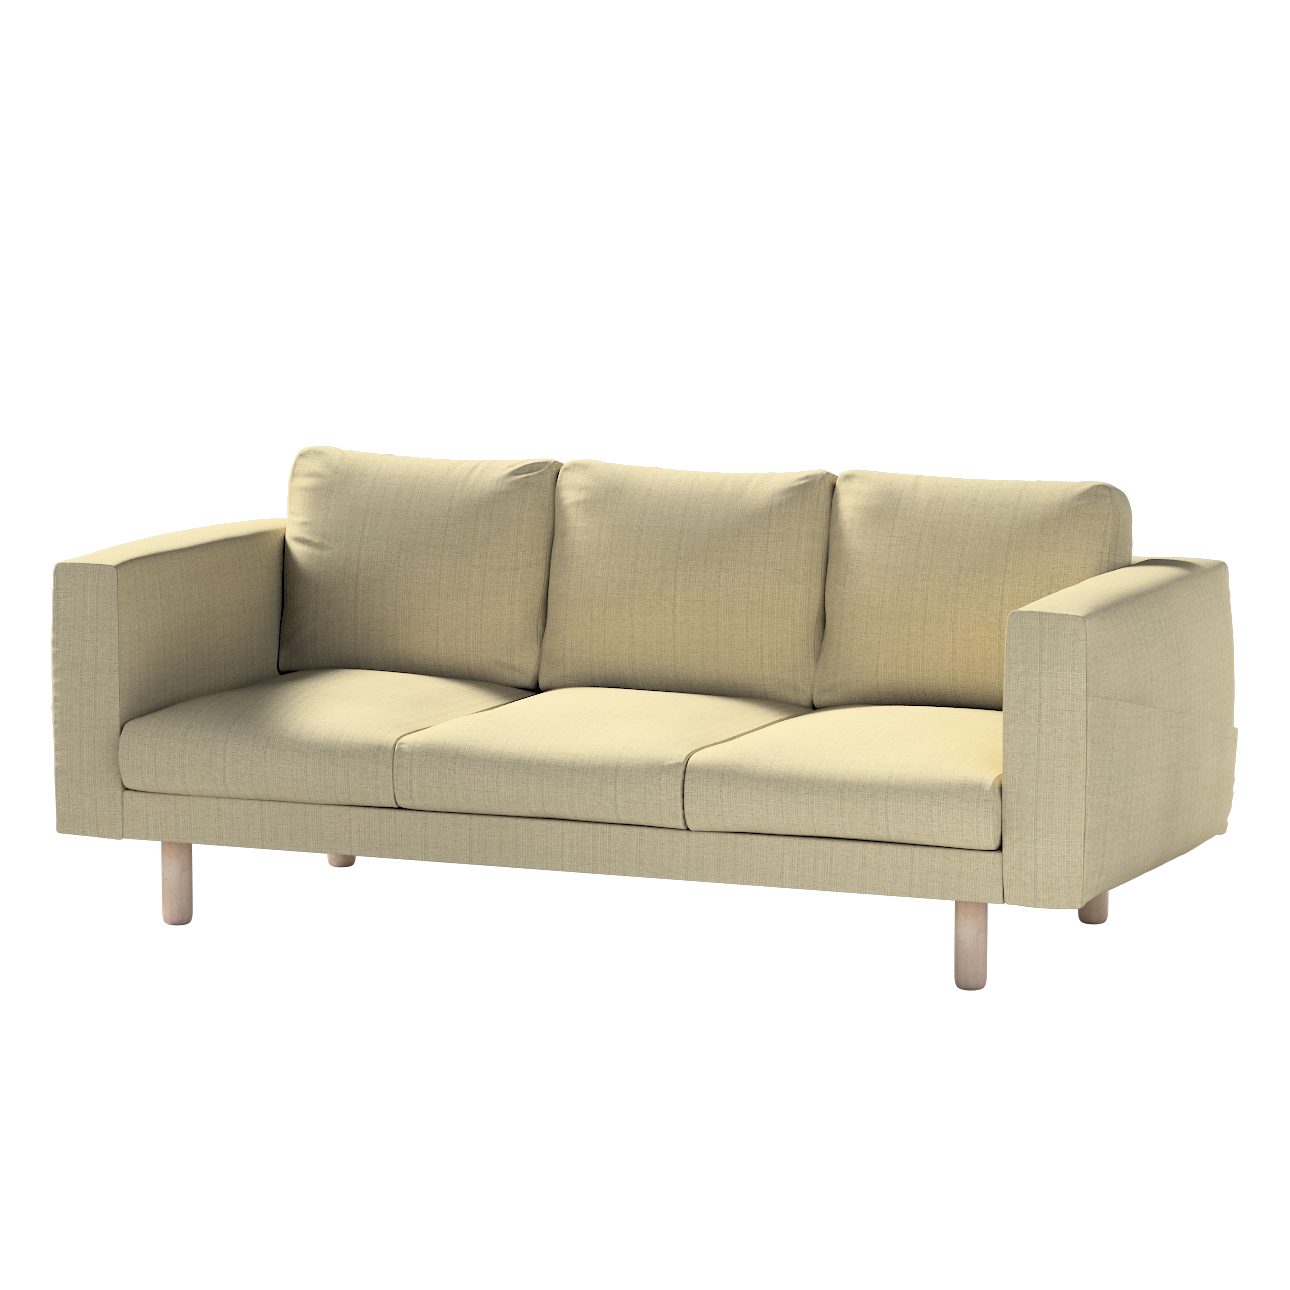 Bezug für Norsborg 3-Sitzer Sofa, beige-creme, Norsborg 3-Sitzer Sofabezug, günstig online kaufen